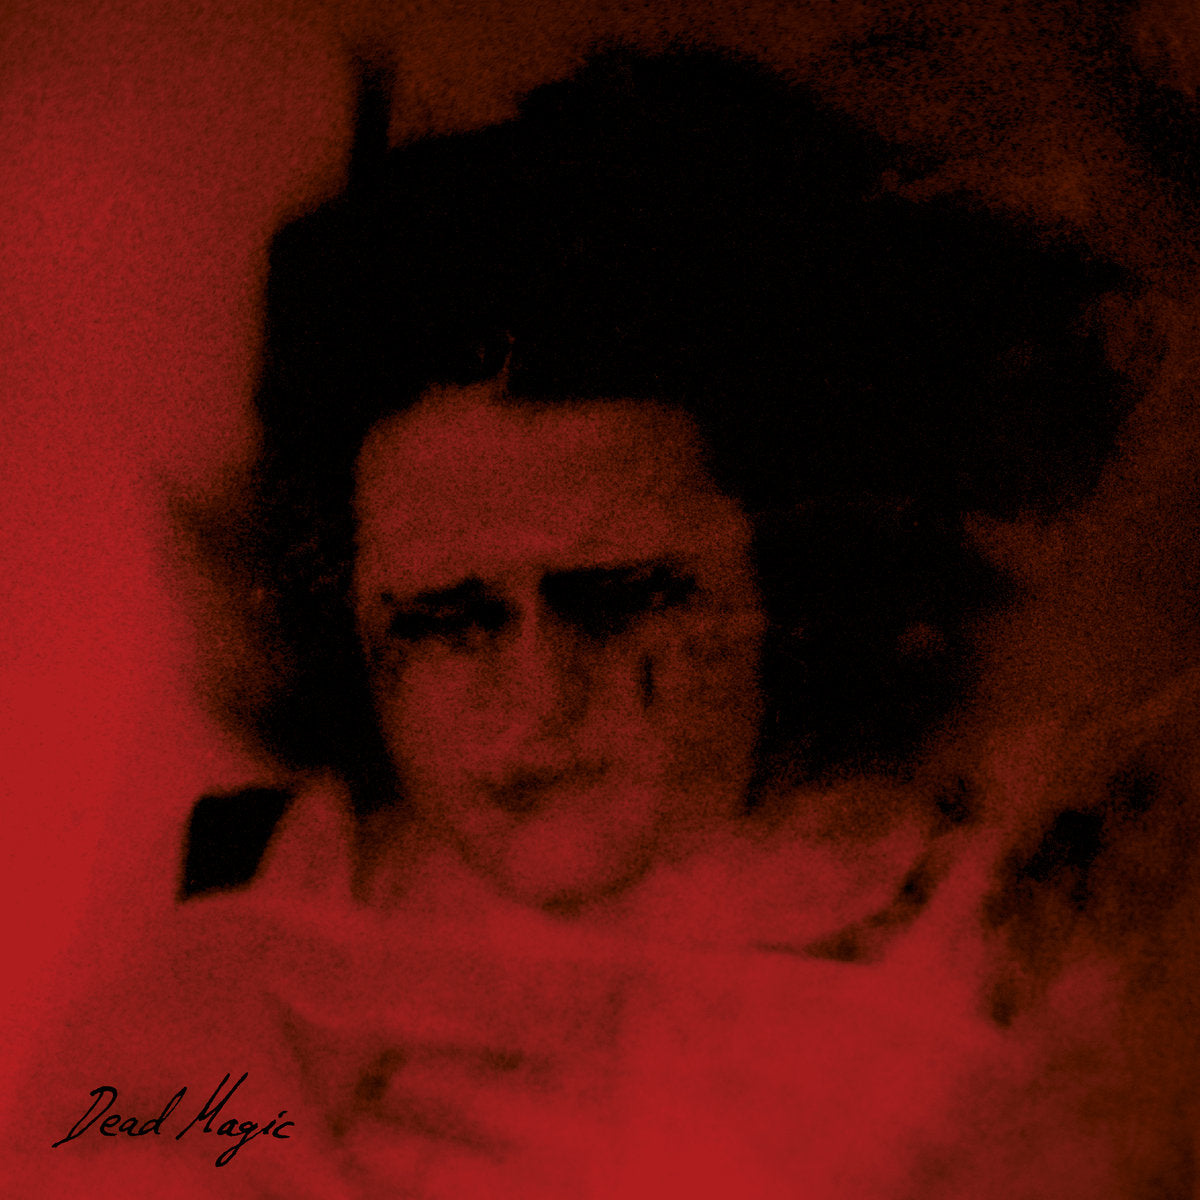 ANNA VON HAUSSWOLFF "Dead Magic" LP